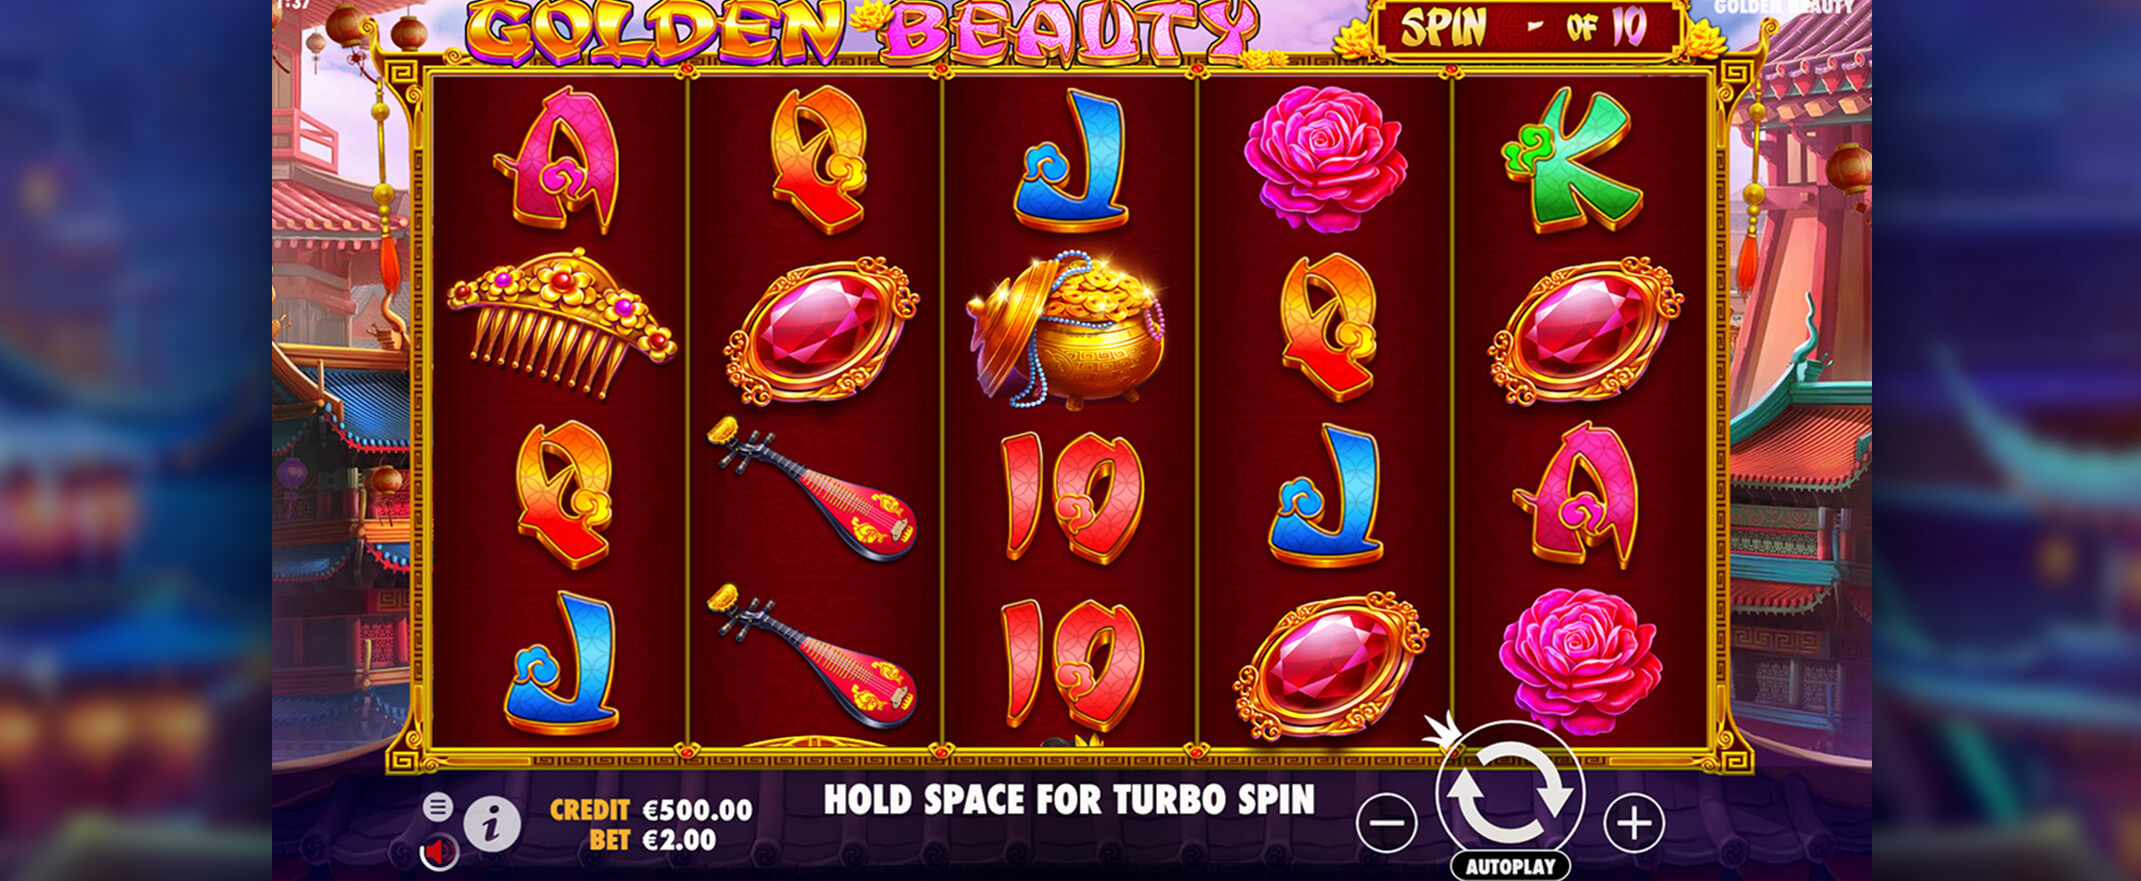 Golden Beauty peliautomaatti - kuva pelin keloista ja symboleista